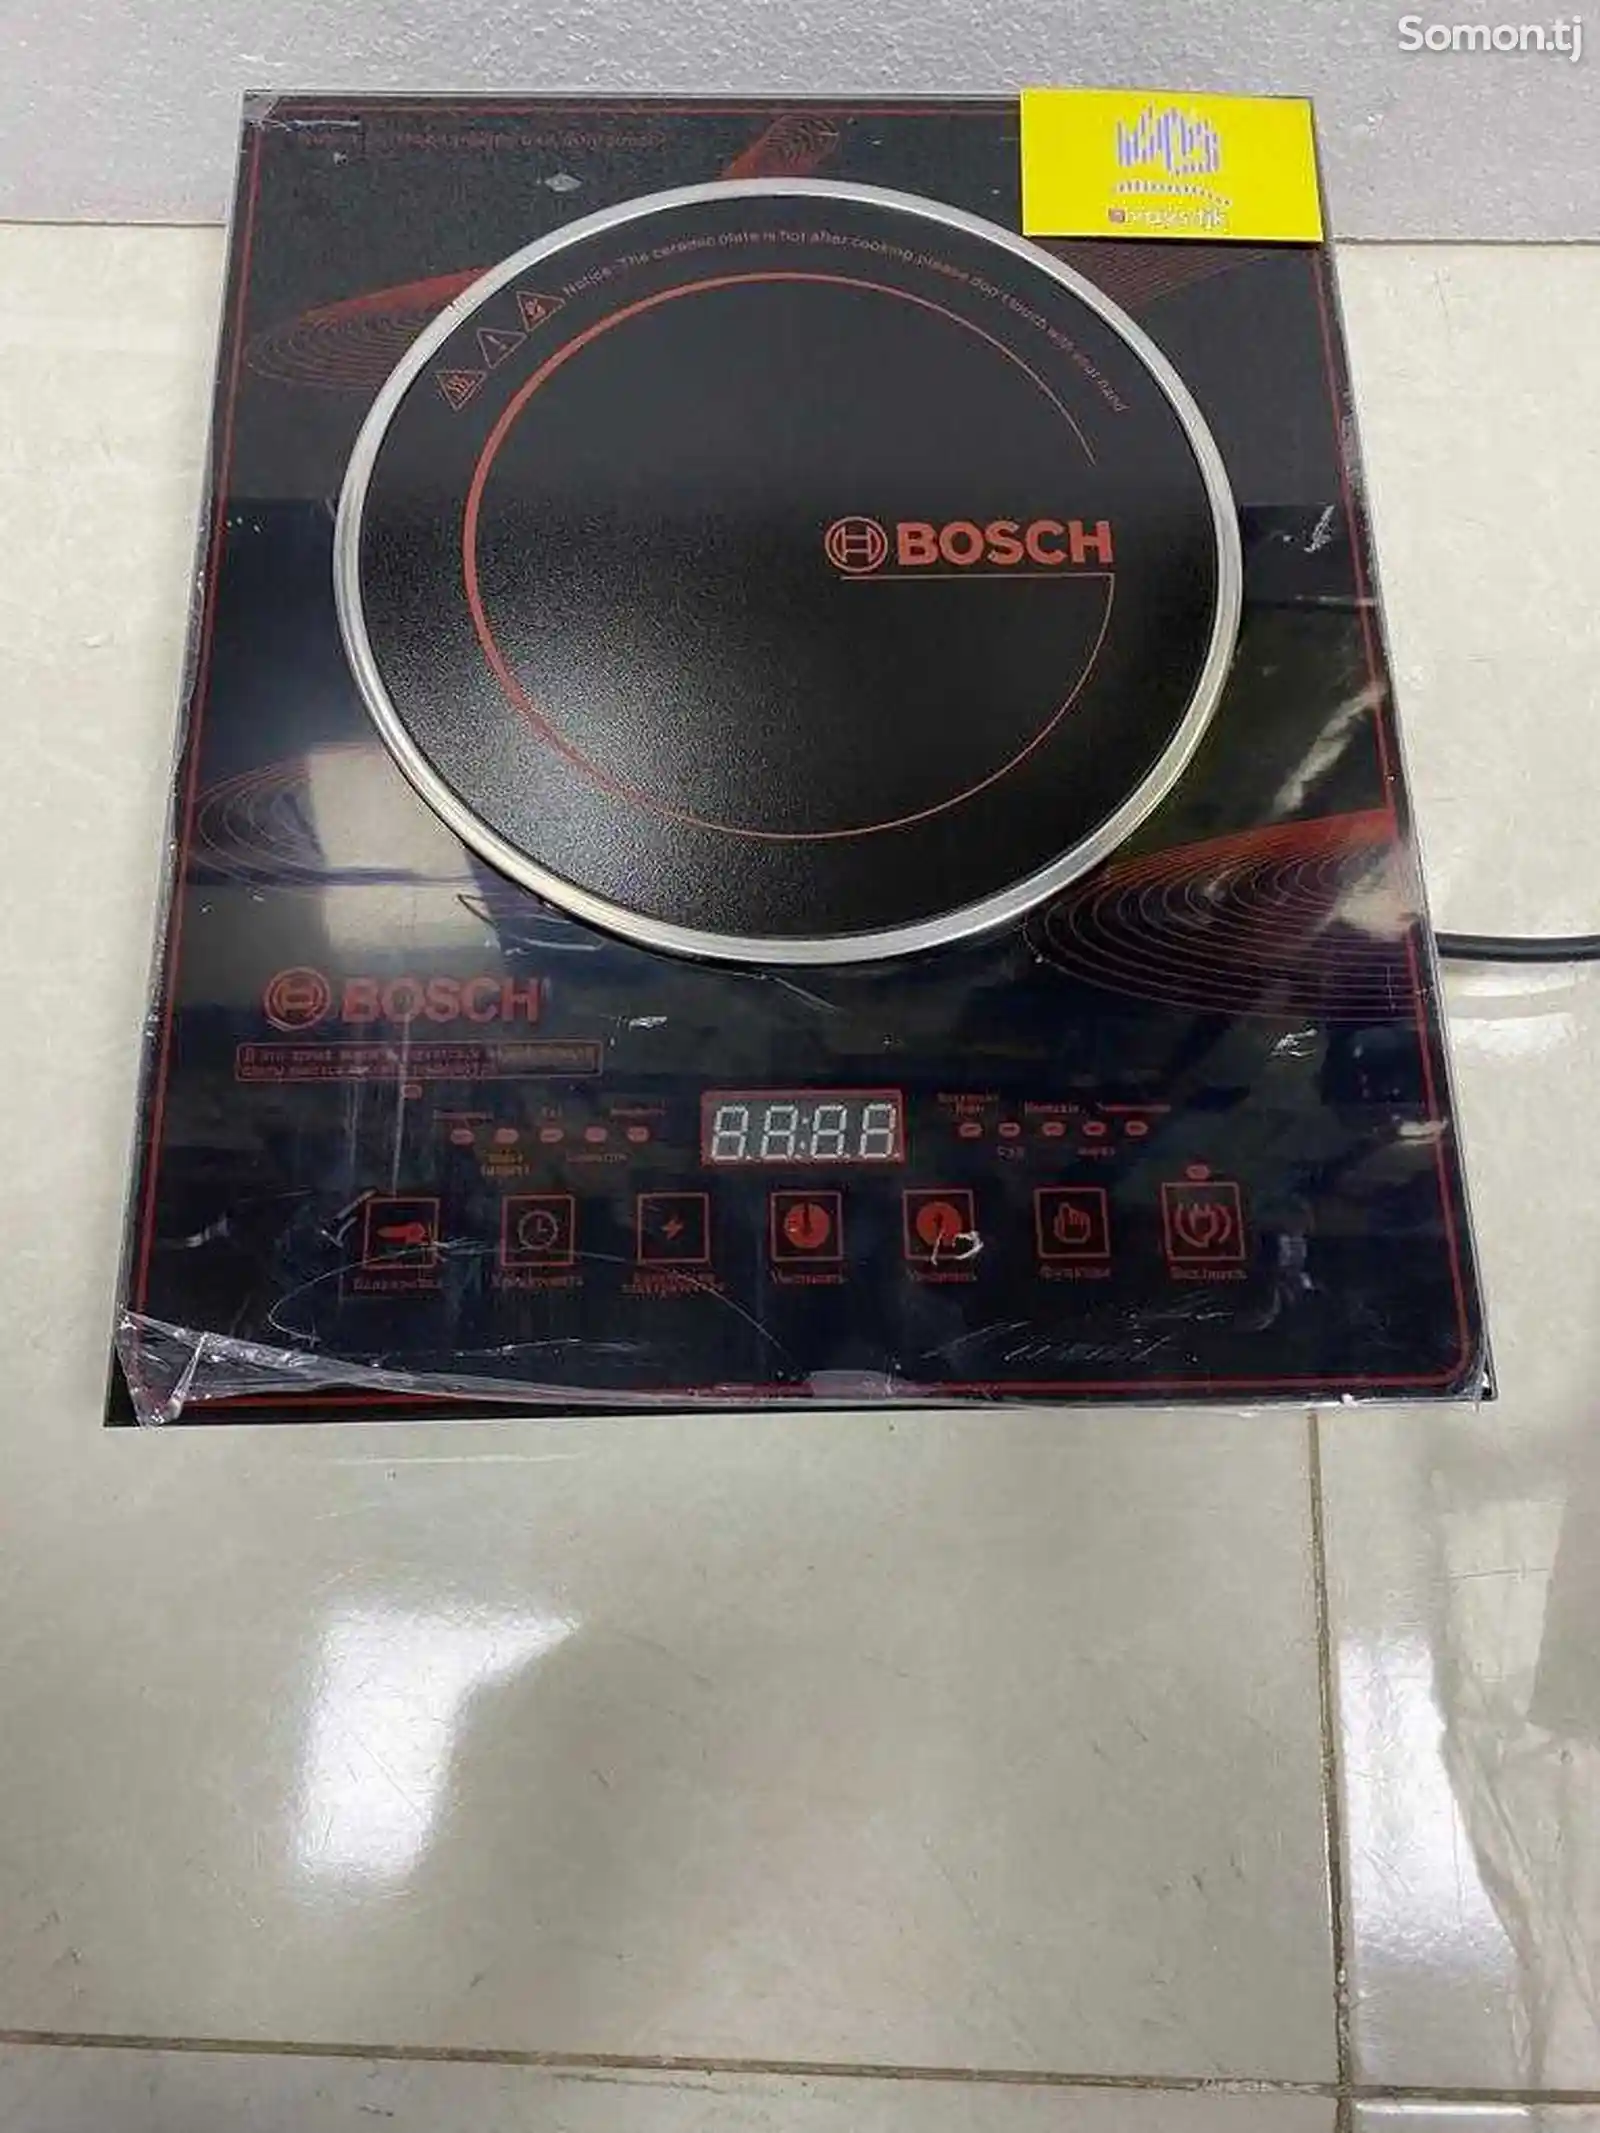 Сенсорная плита Bocsh 7032-2